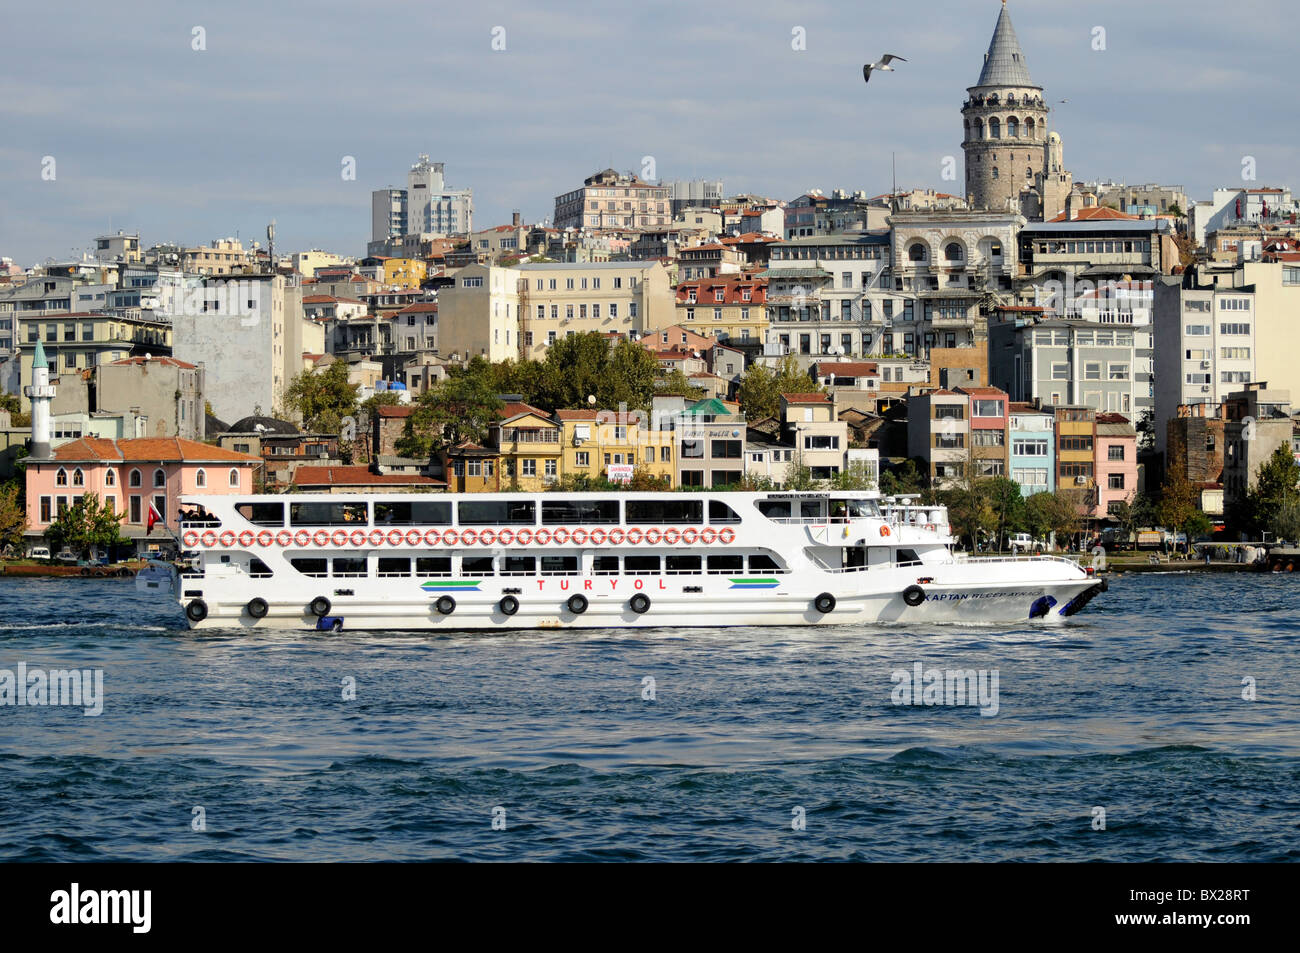 Touristen auf einen Turyol Anblick sehen Fahrt entlang dem Bosporus von dem Goldenen Horn, Istanbul, Türkei. Galata-Turm im Hintergrund Stockfoto